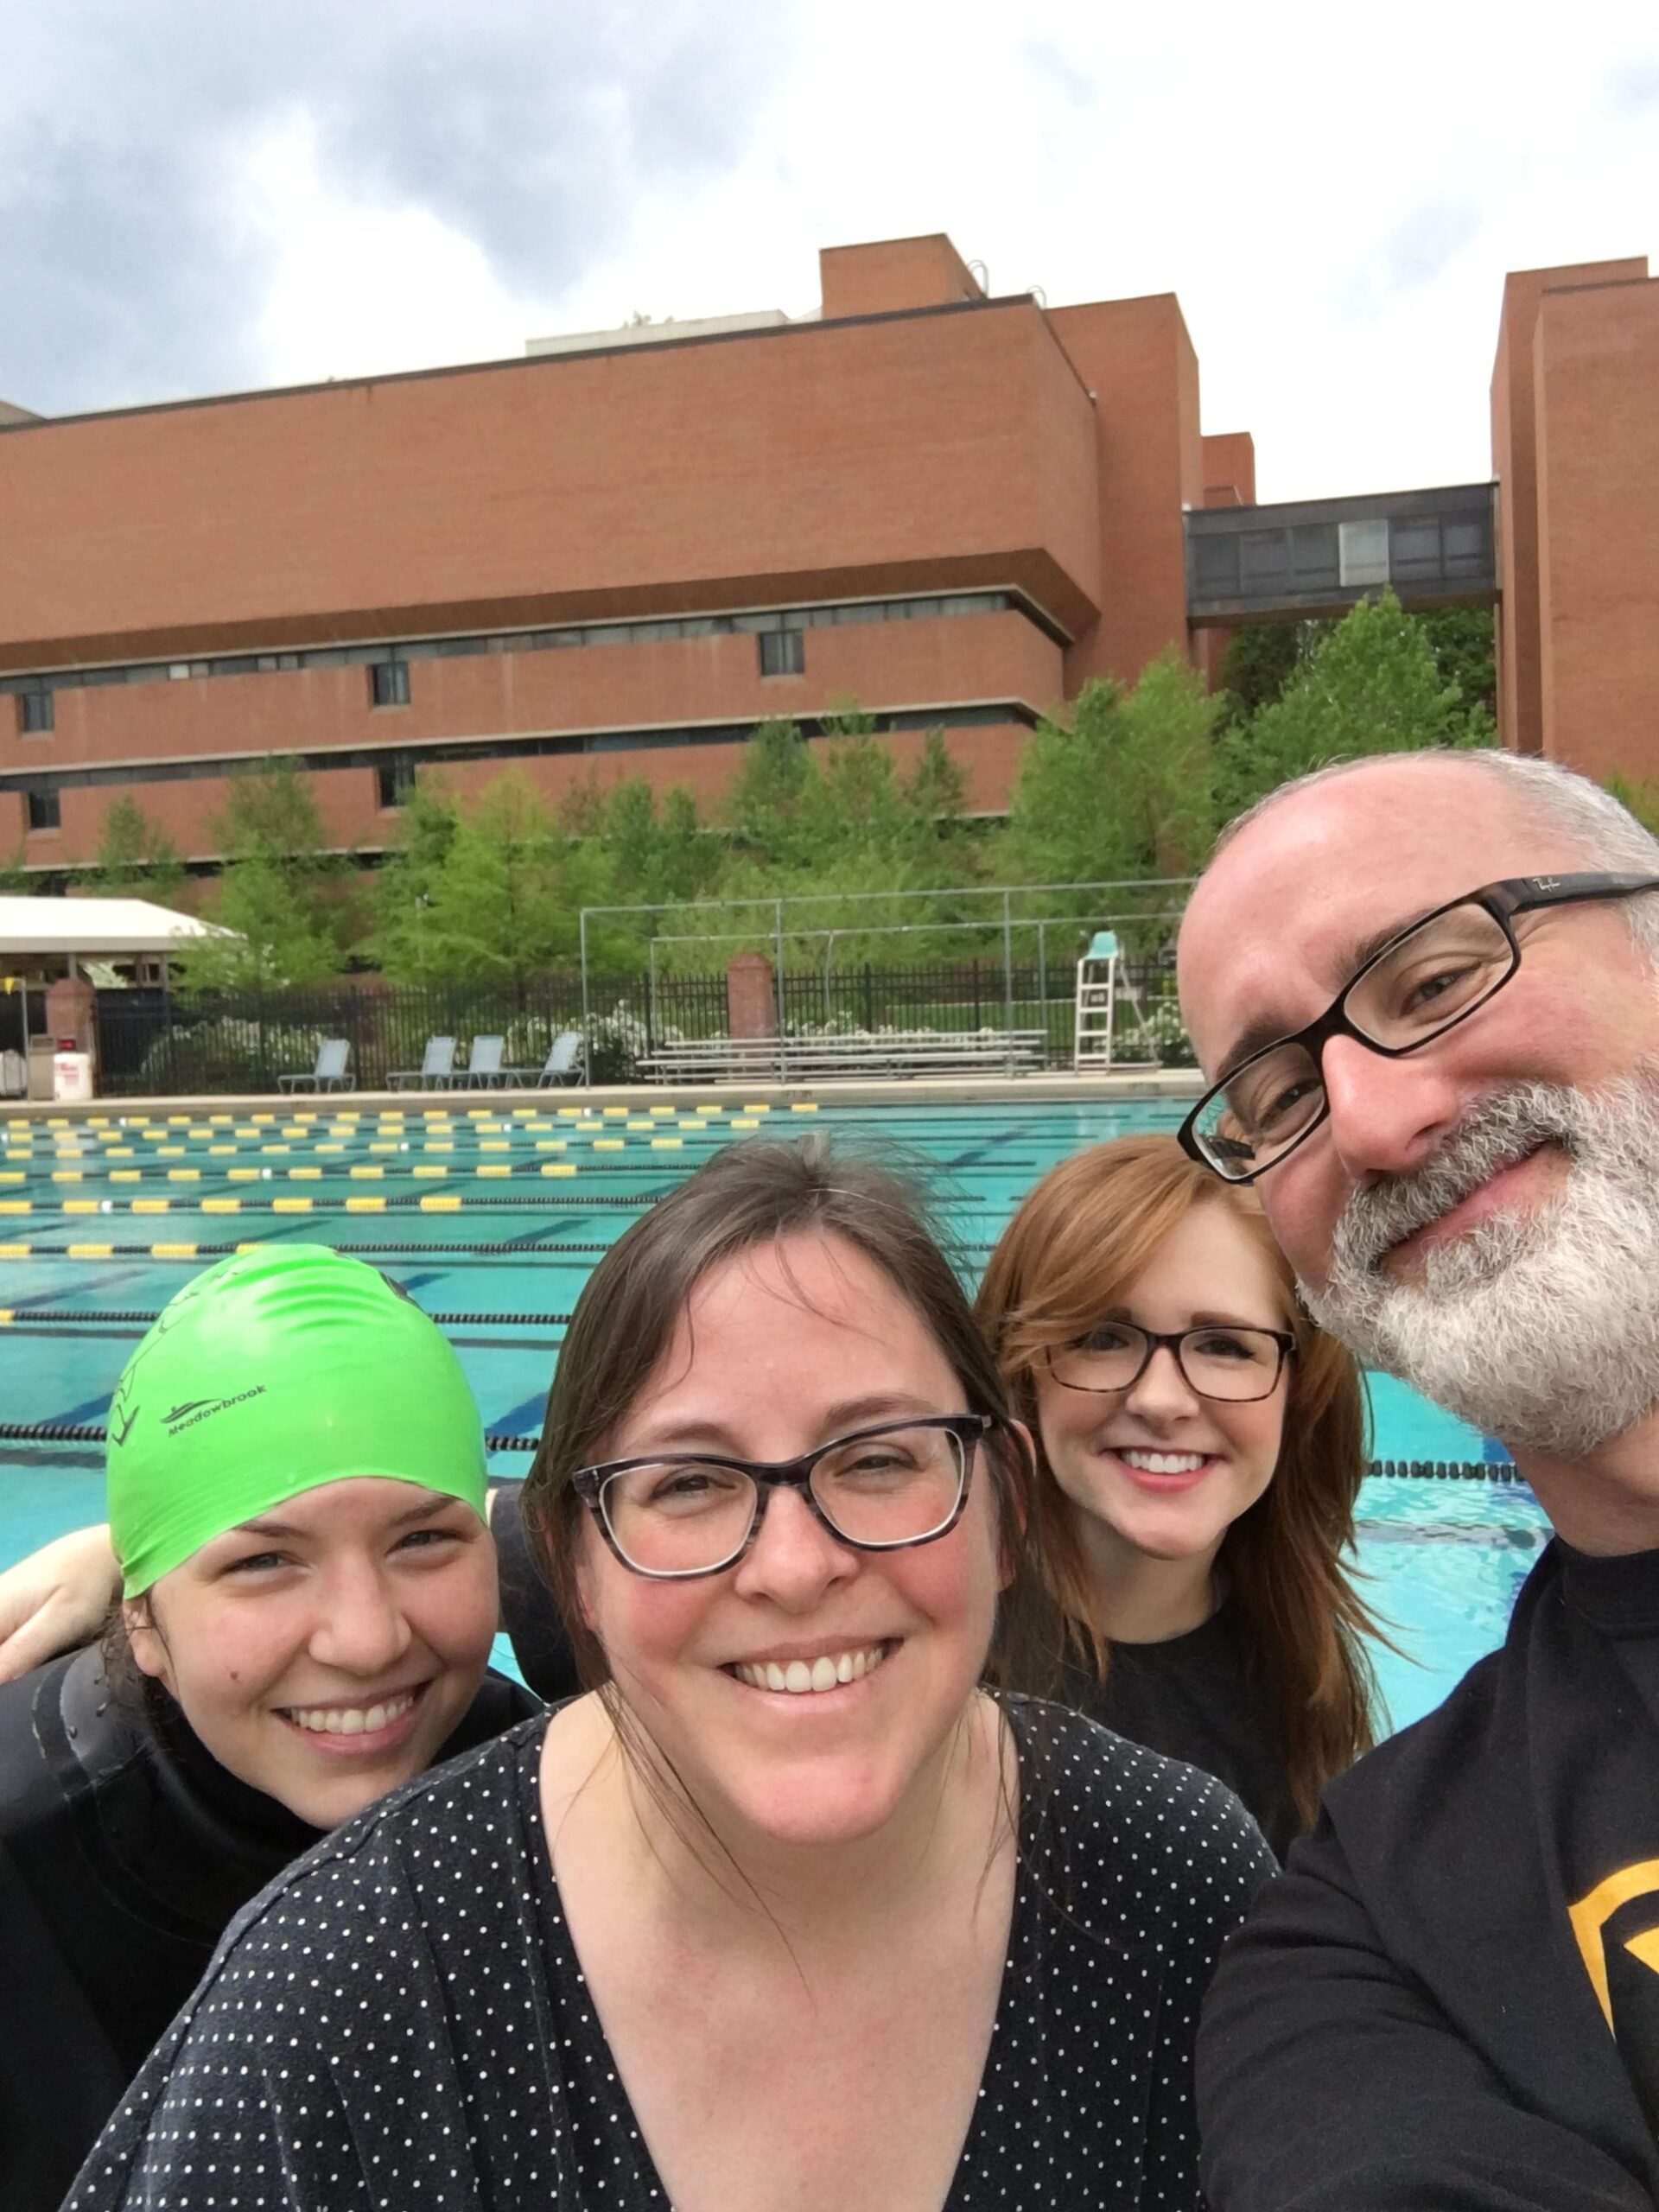 staff takes selfie by pool